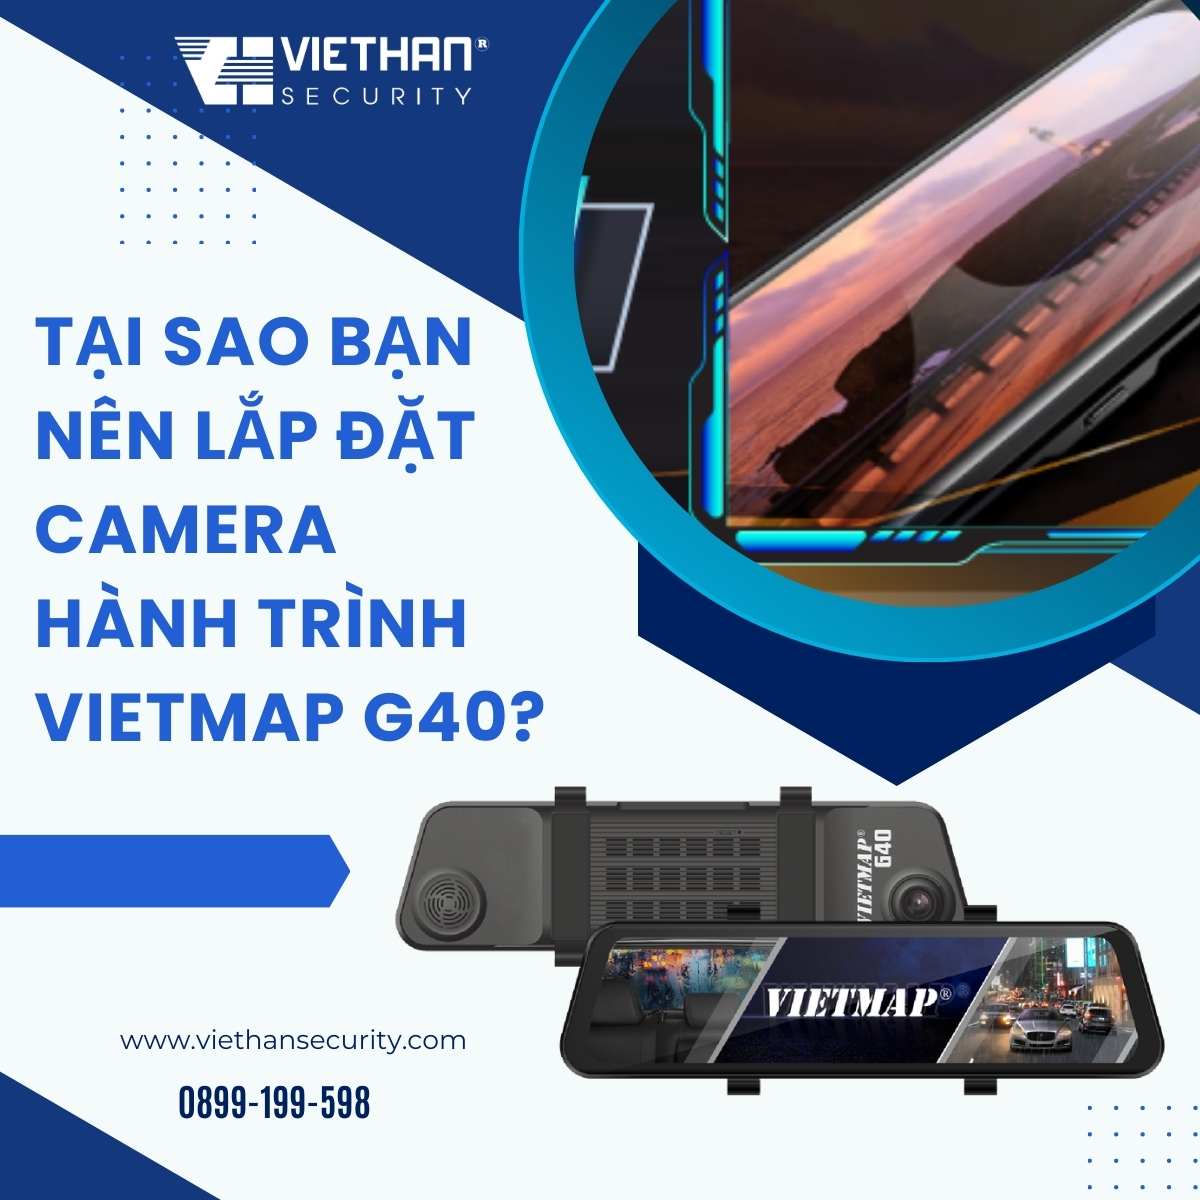 Tại sao bạn nên lắp đặt camera hành trình Vietmap G40?